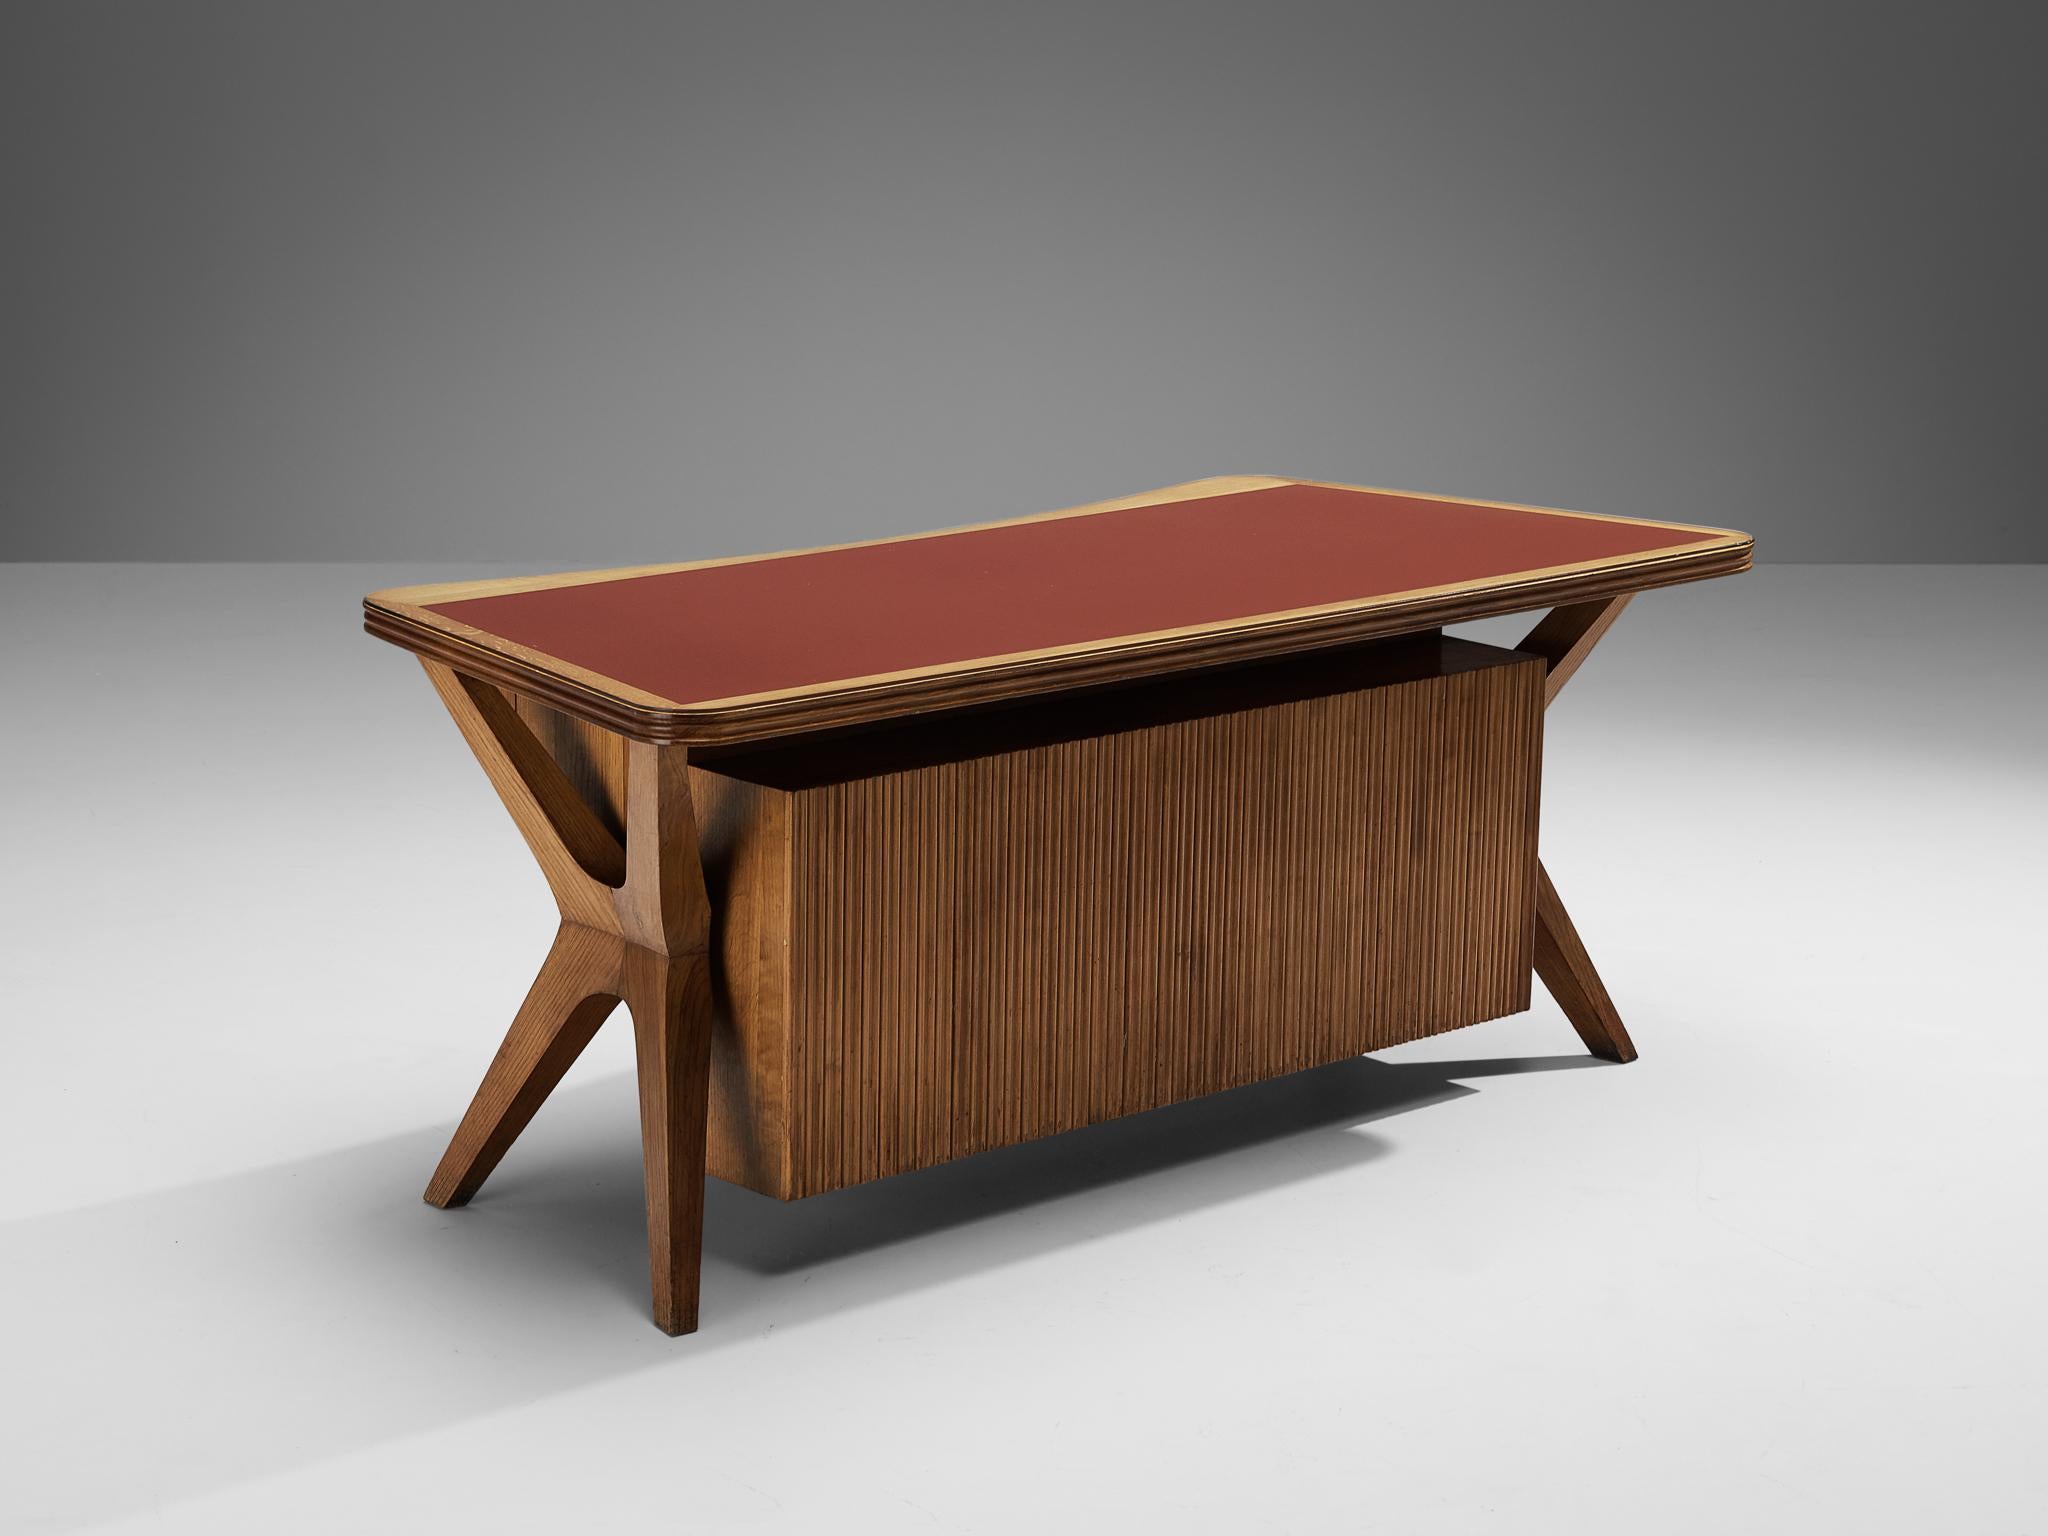 Chefschreibtisch, Nussbaum, Messing, Glas, Italien, 1950er Jahre

Dieser in Italien hergestellte Schreibtisch wurde nach den Designprinzipien der Mitte des Jahrhunderts entworfen, die in den fünfziger Jahren in Mode waren. Der Schreibtisch zeugt von